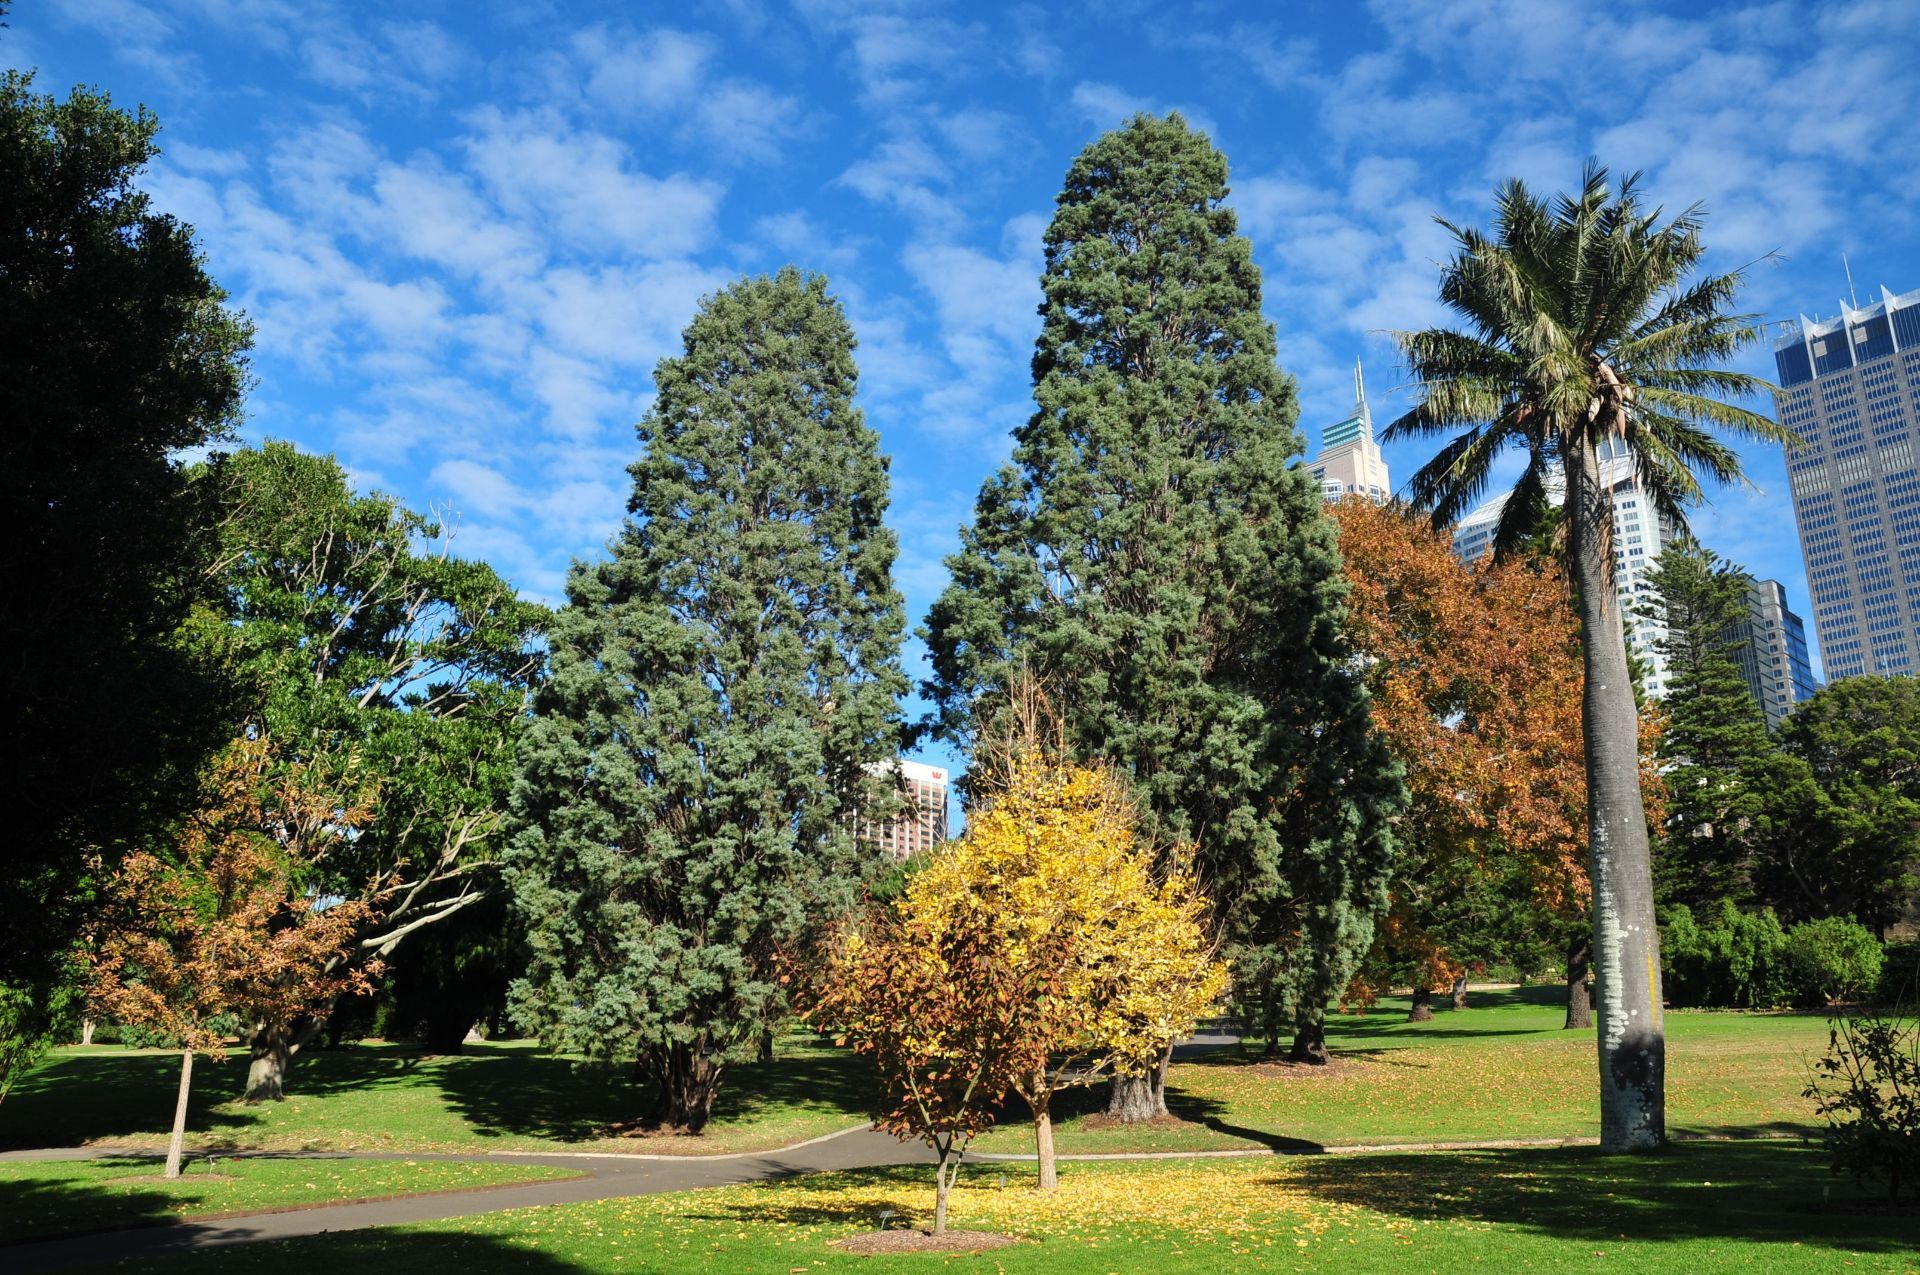 Royal Botanic Gardens Sydney - City of Sydney